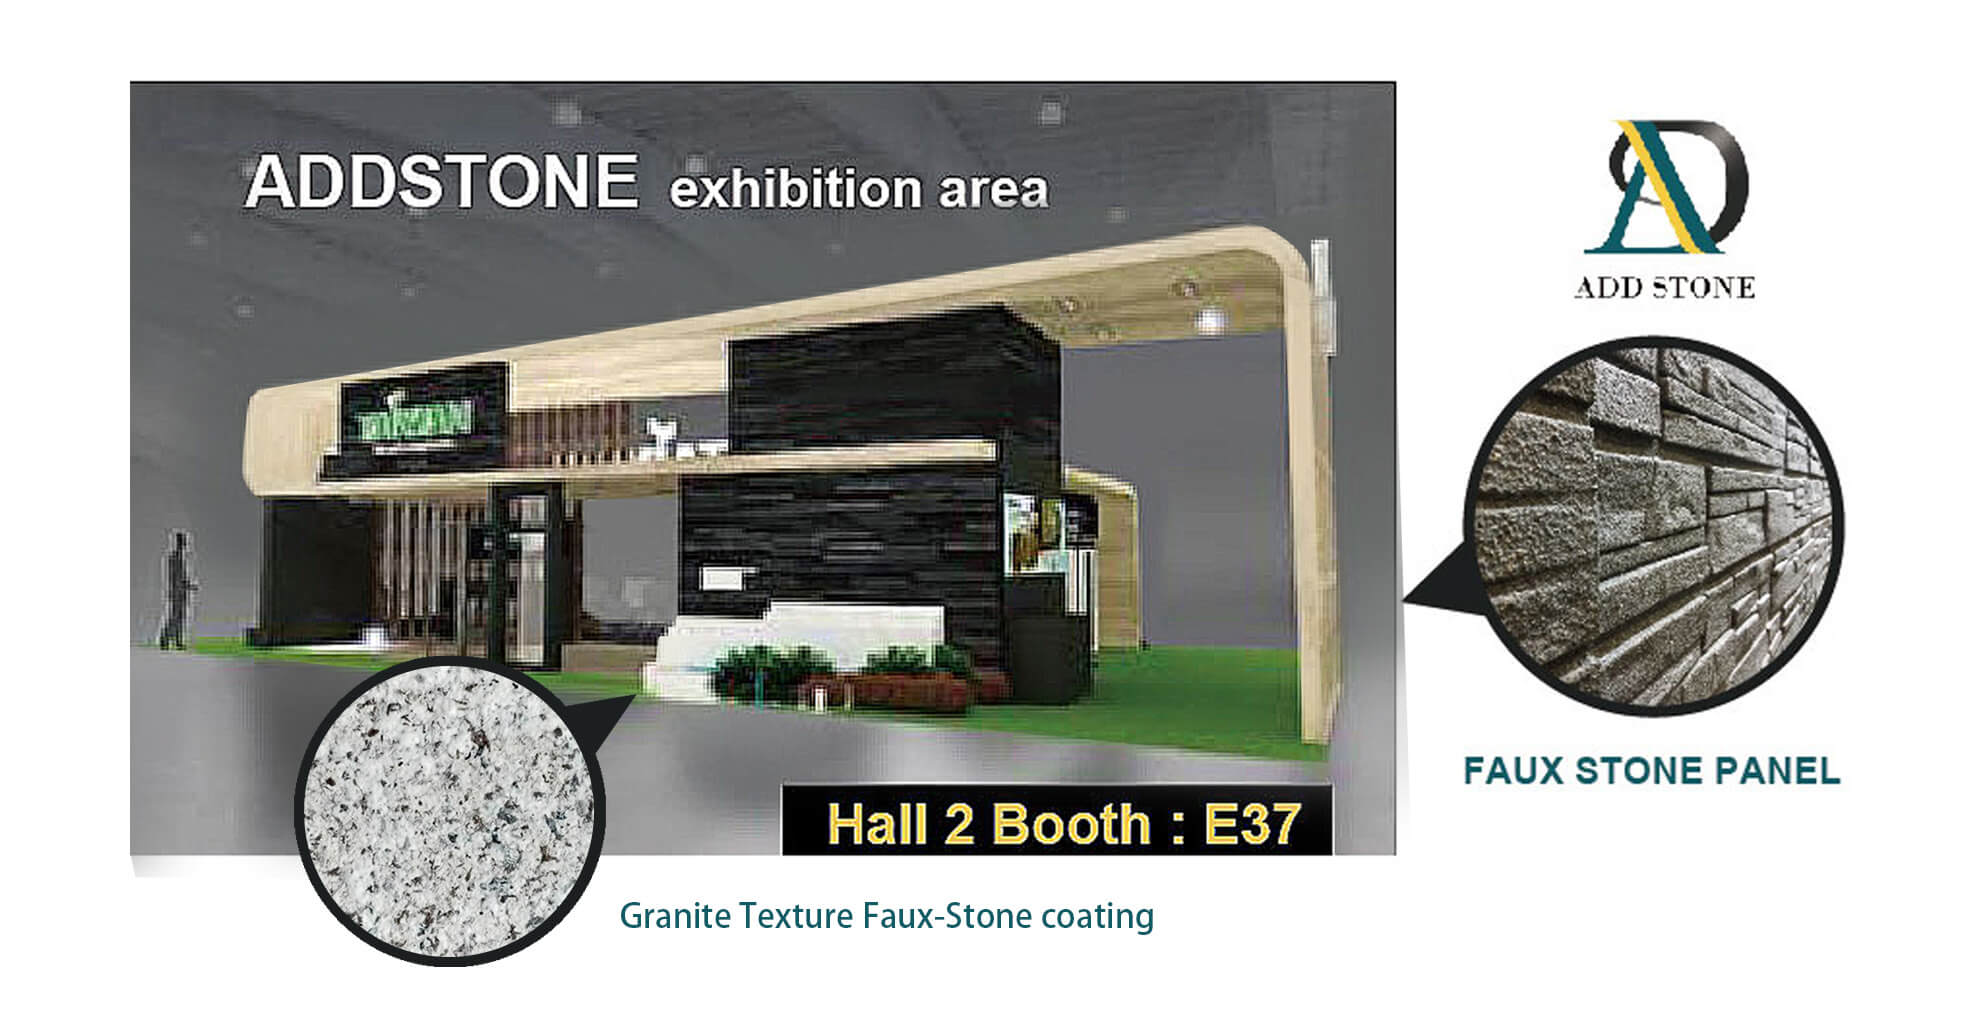 ADD STONE tham gia Triển lãm Vật liệu xây dựng xanh tại Qatar  2019. Vật liệu triễn lãm là sơn giả đá, tấm ốp tường giả đá. Gian hàng E37 , Hội trường 2